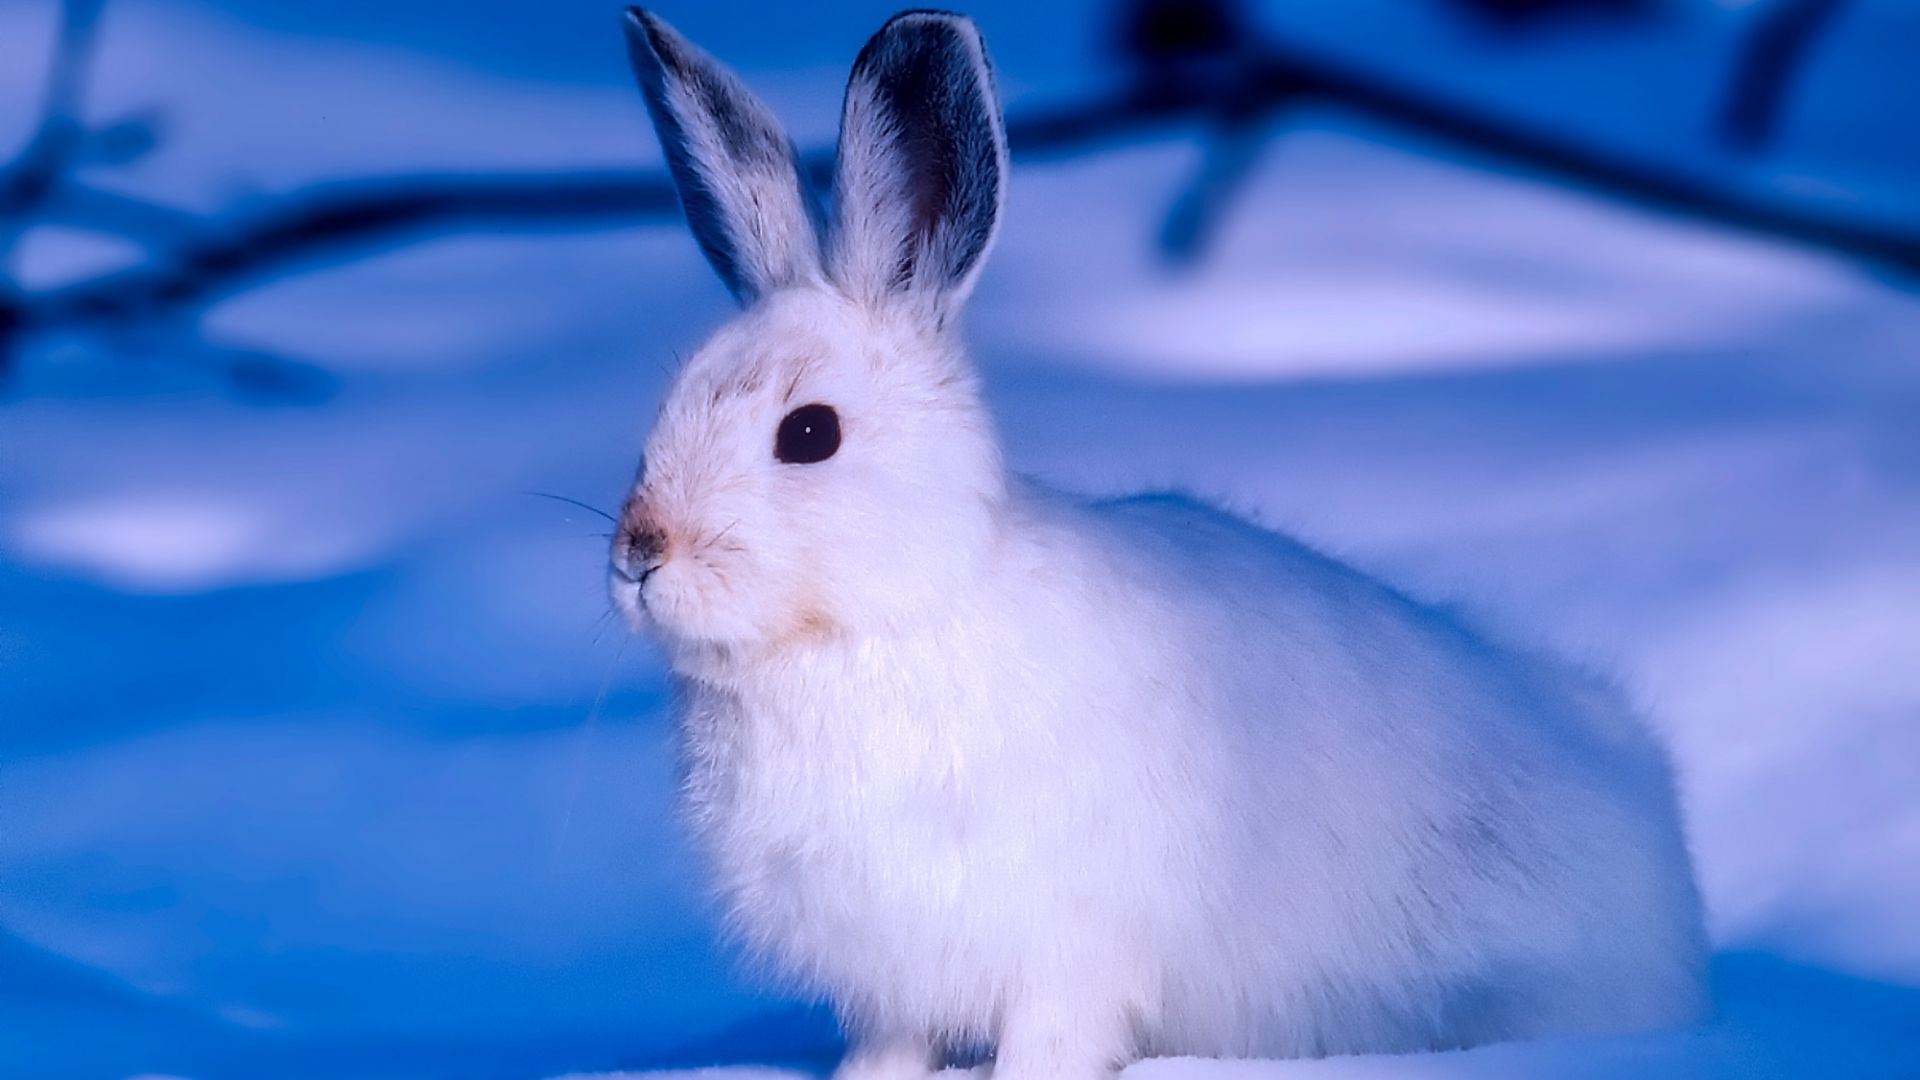 Wallpaper Arctic animal, Rabbit, white animal